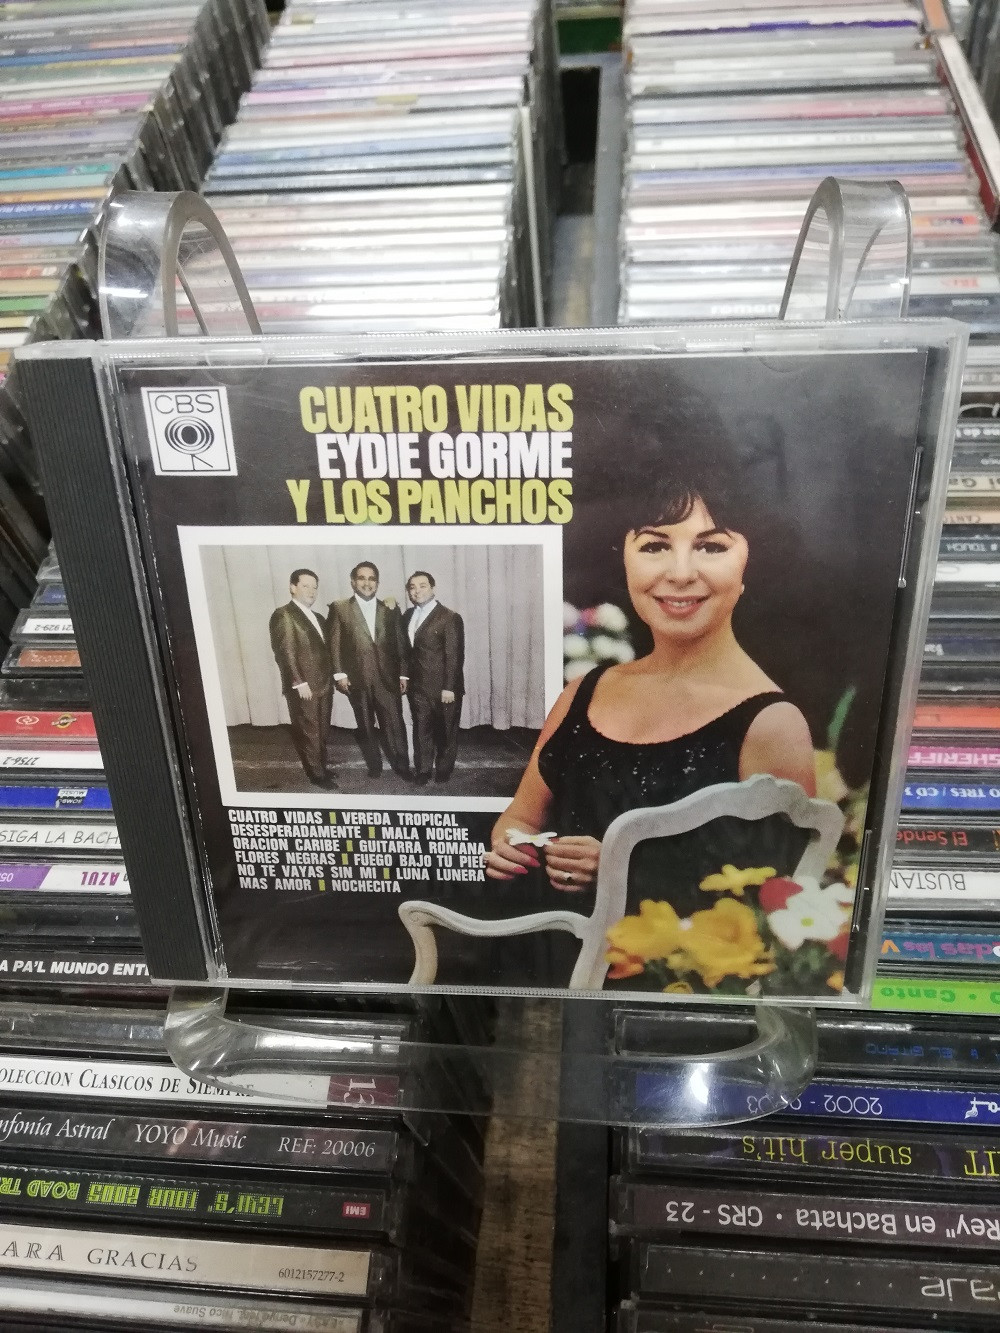 Imagen CD EYDIE GORME Y LOS PANCHOS - CUATRO VIDAS